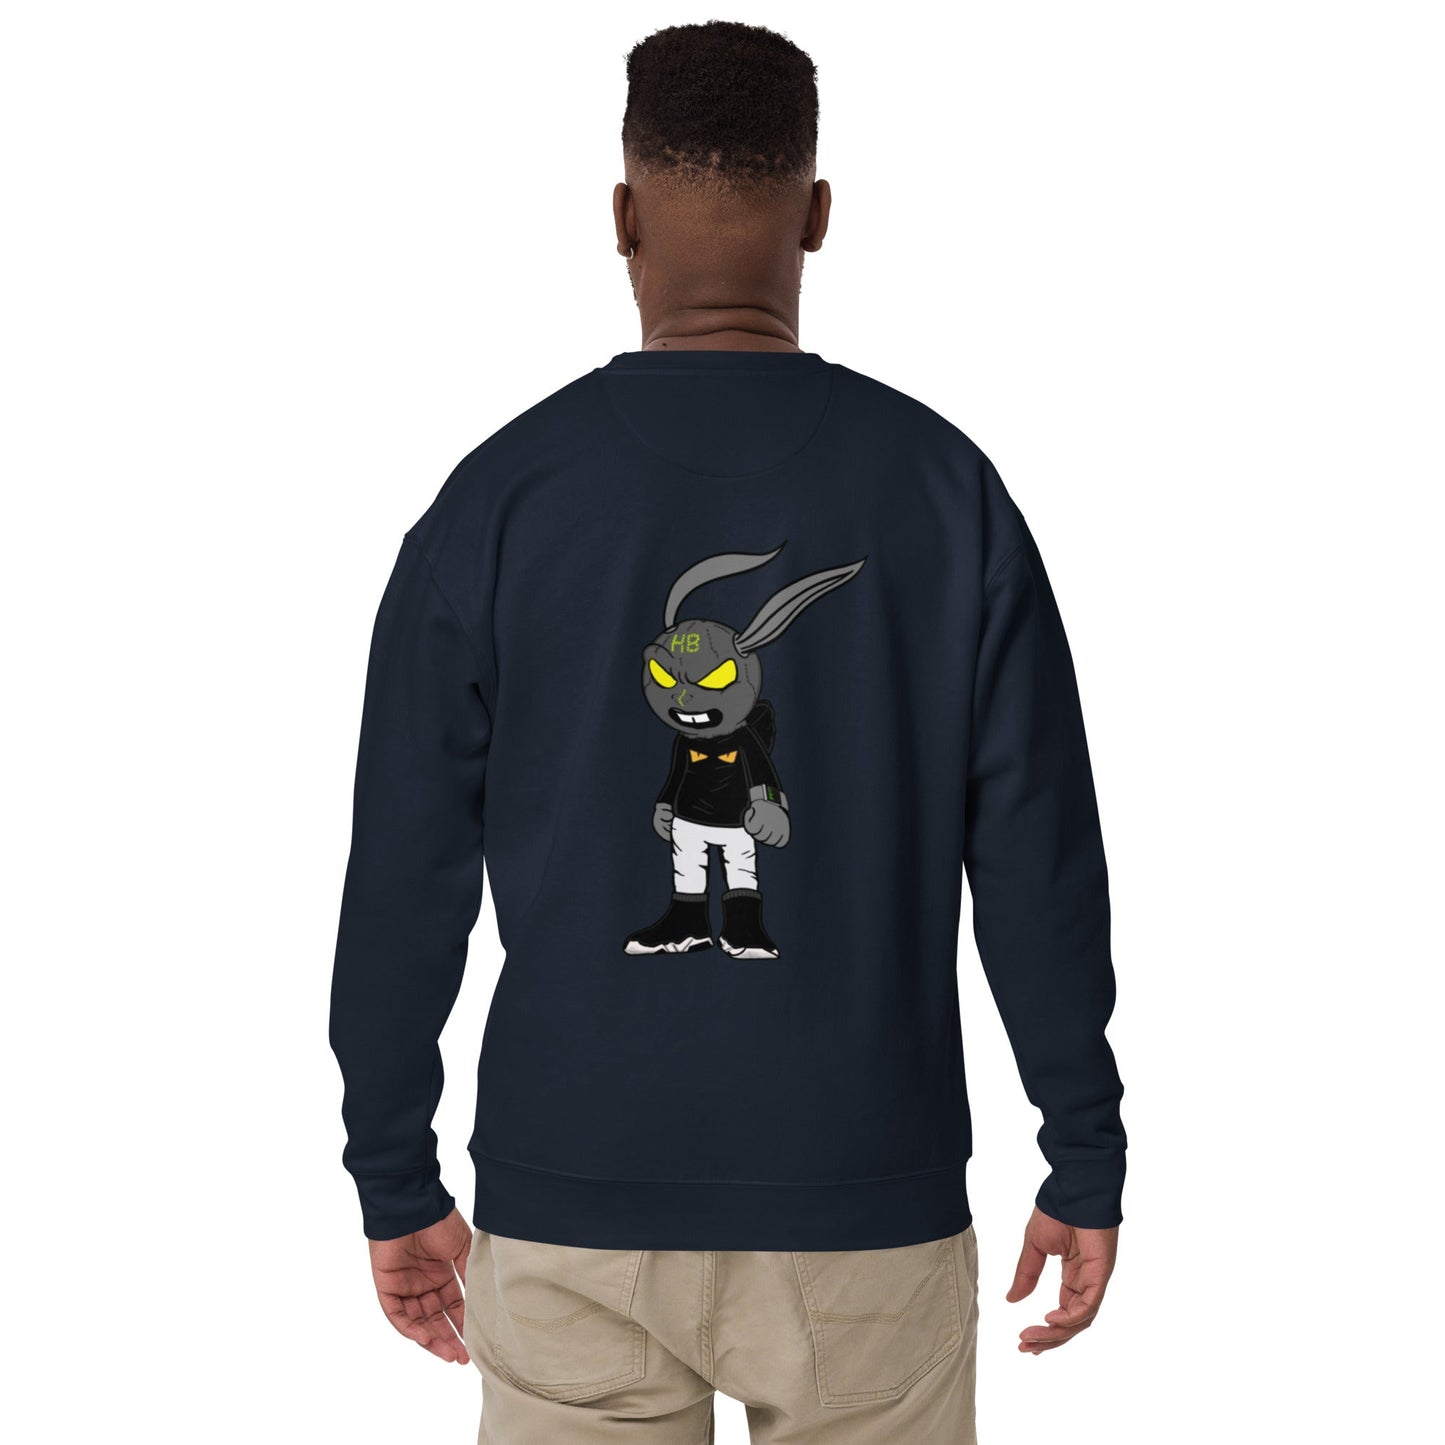 ASH Style 2 Sweatshirt